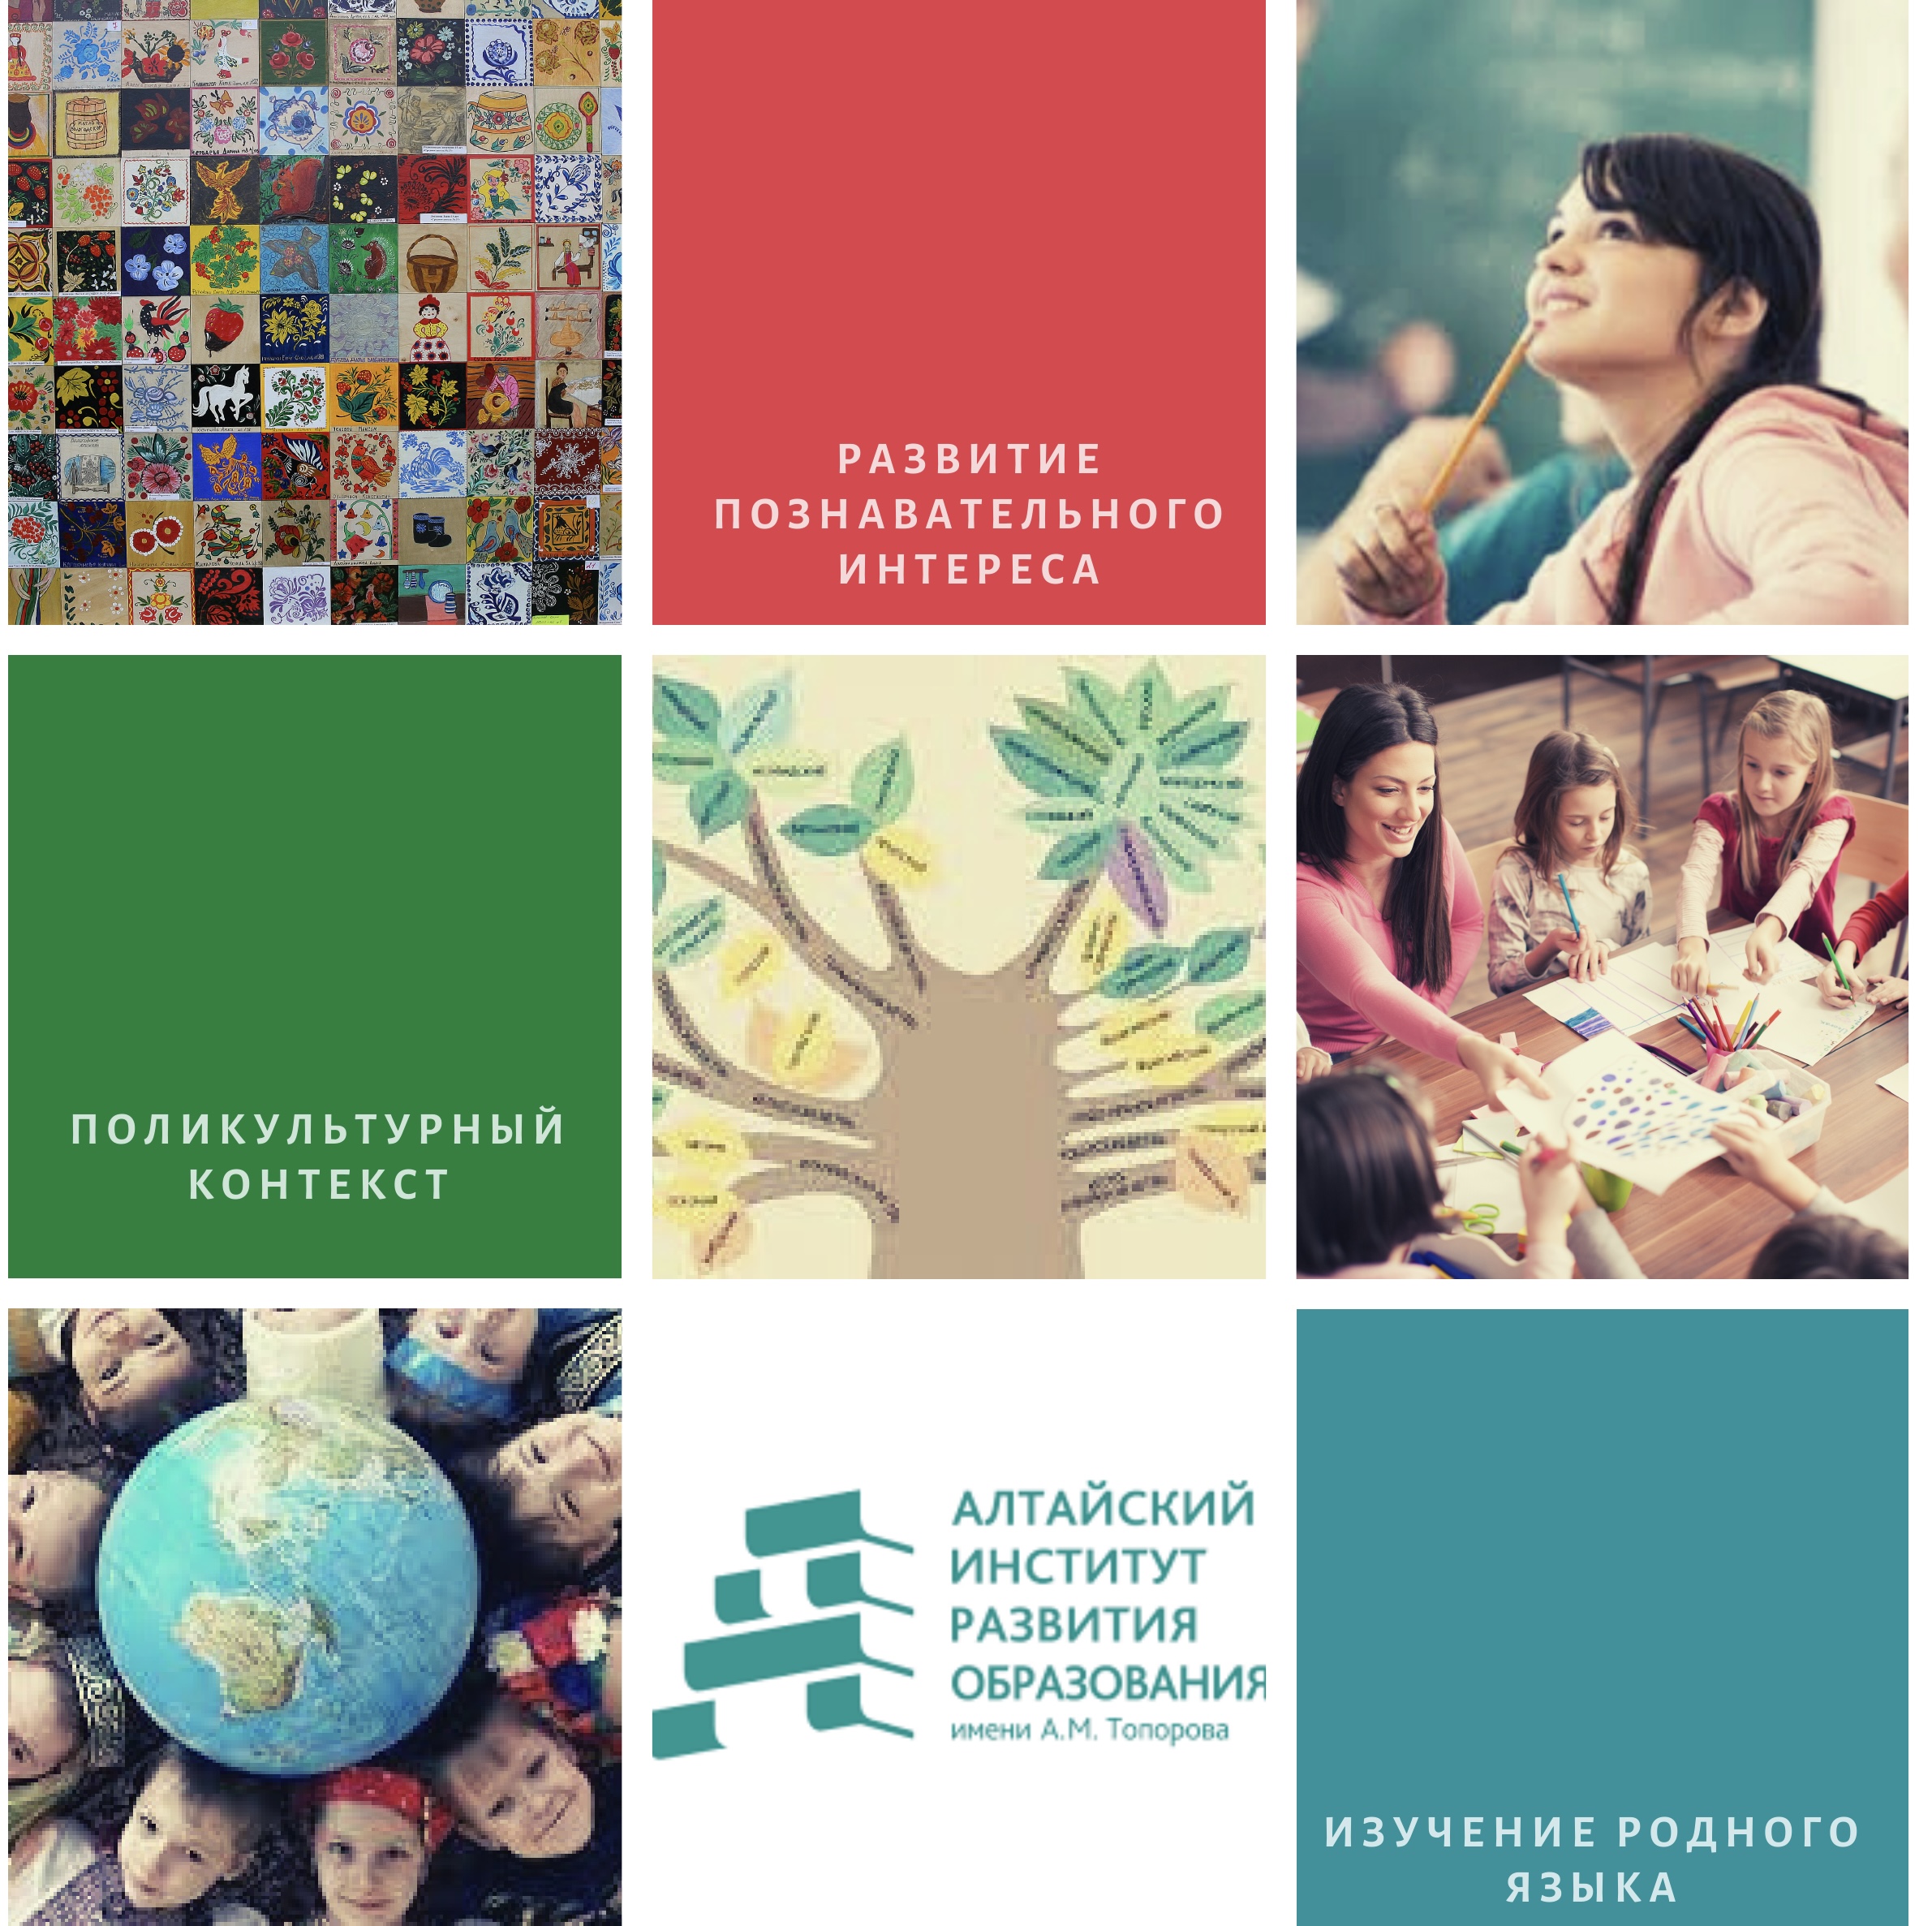 В Алтайском крае проведен межрегиональный онлайн-семинар «Родные языки в школьном образовании»